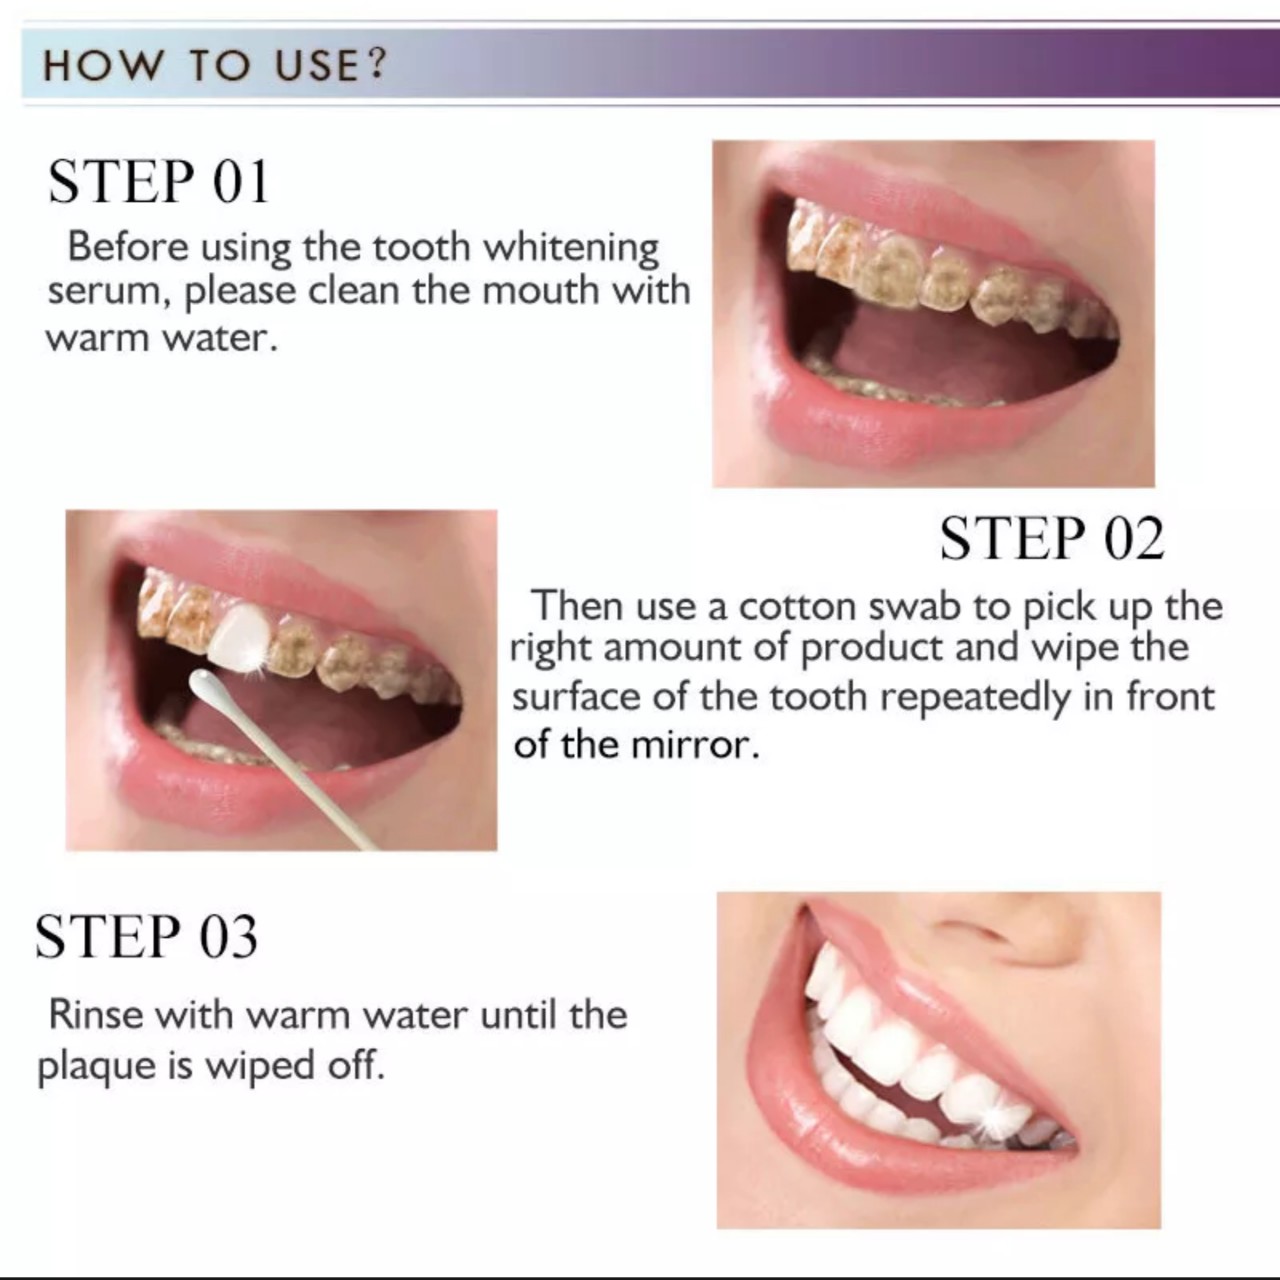 Tinh chất làm trắng răng loại bỏ sạch mảng bám ố vàng trên răng hiệu quả hàng cao câp